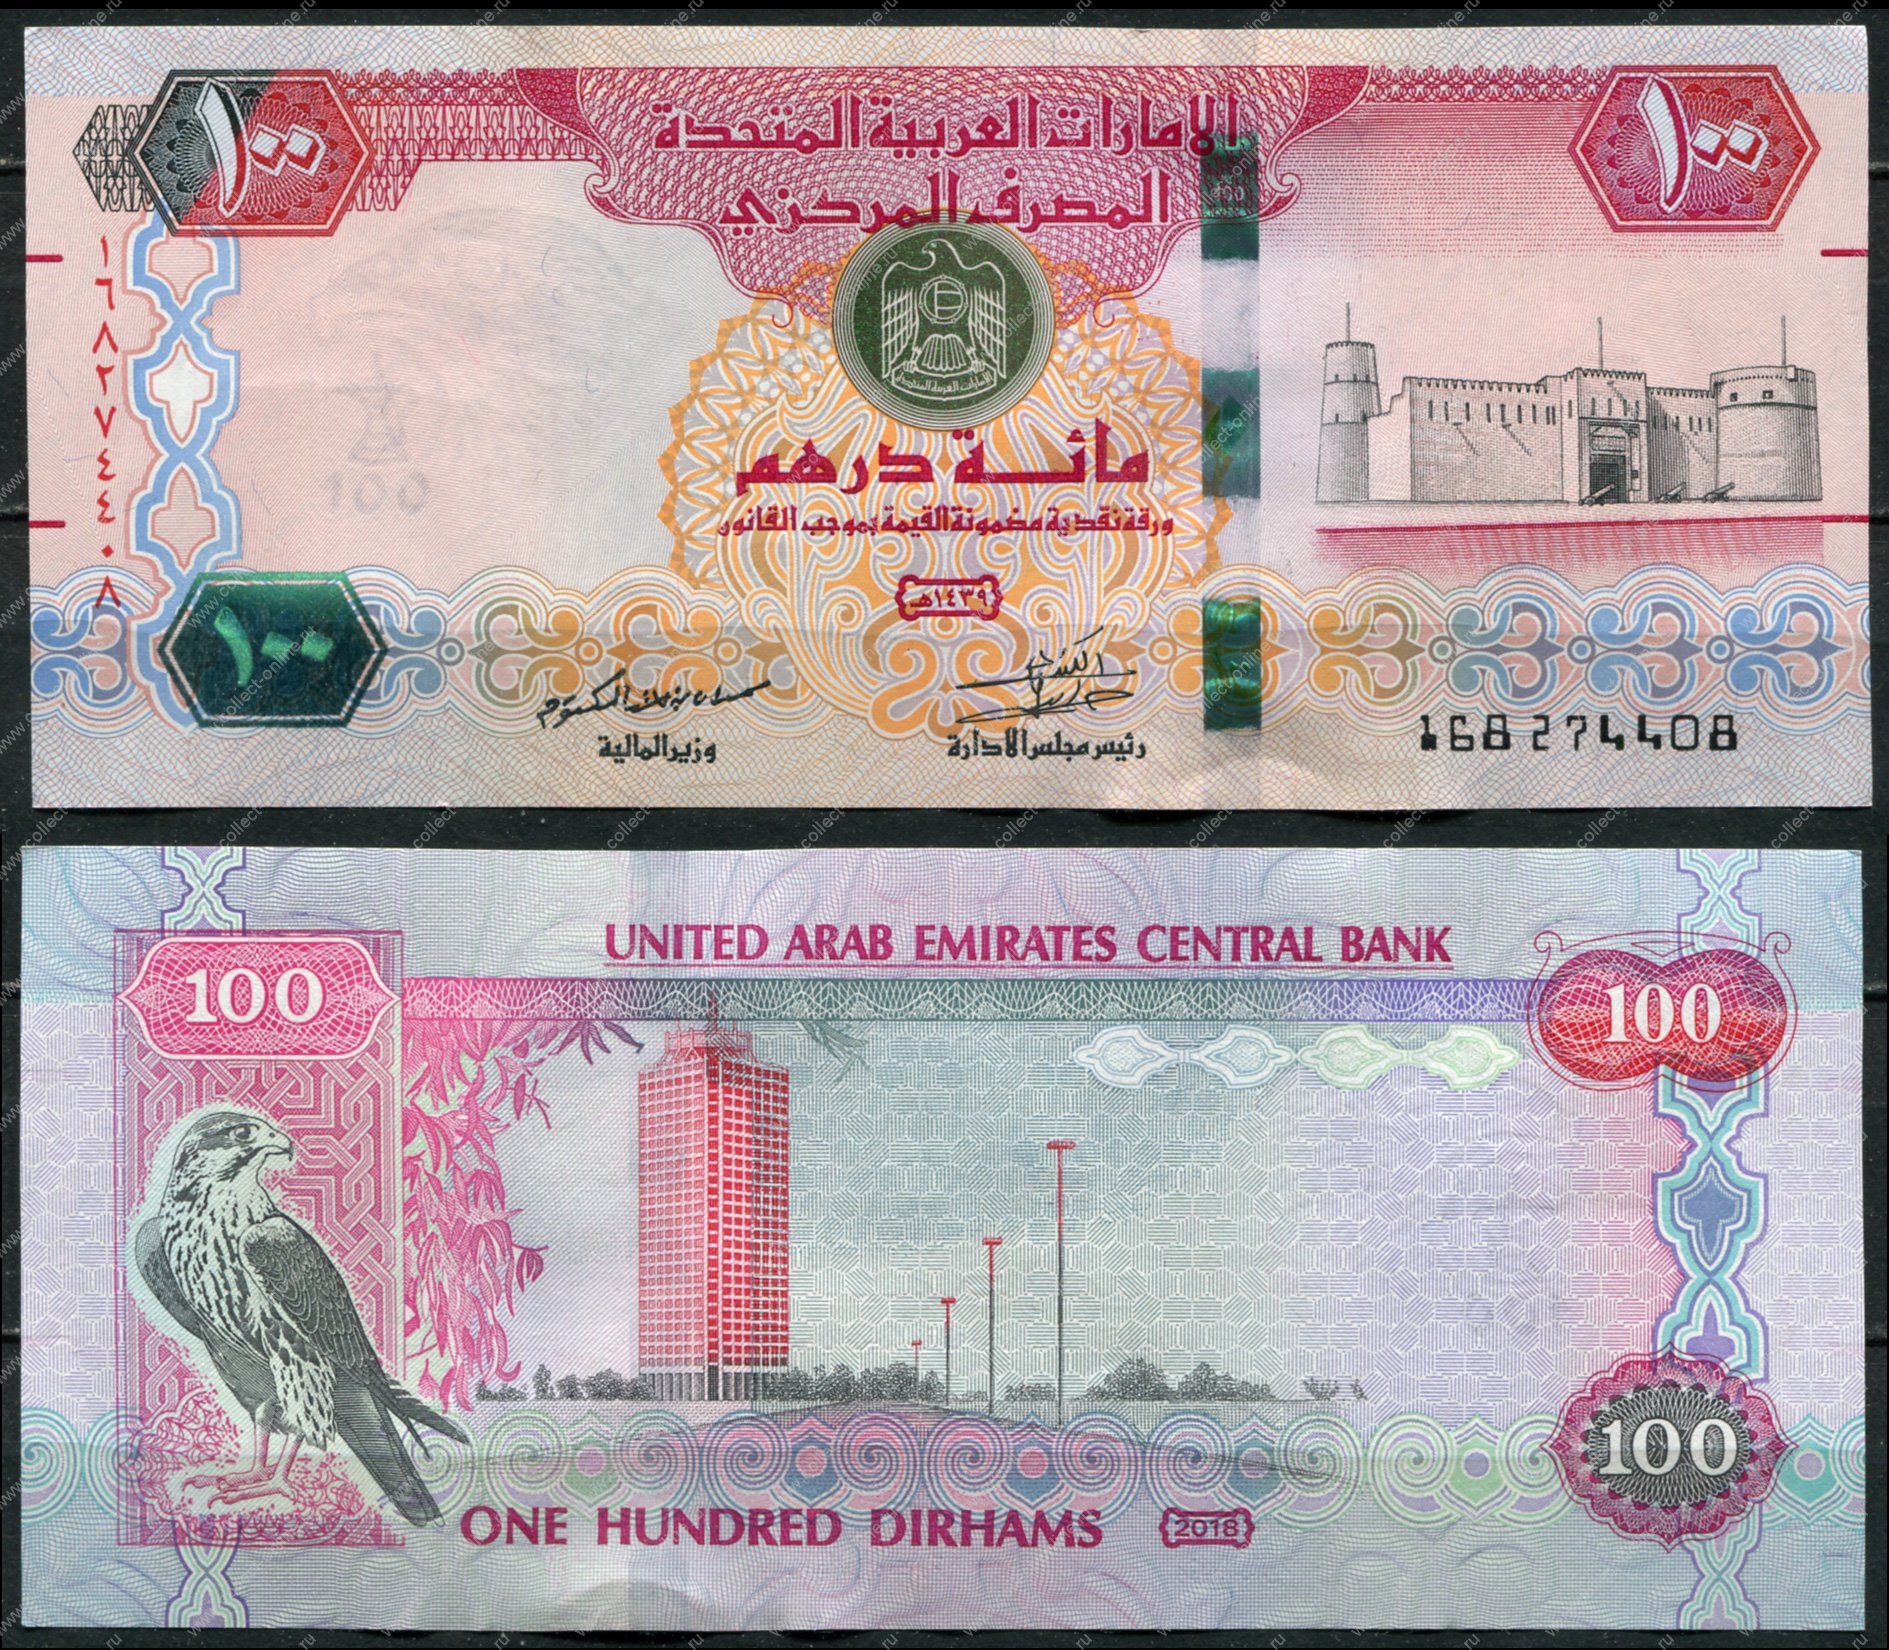 Рубль дирхам курс на сегодня в дубае. Дирхамы ОАЭ. Рубль к дирхаму ОАЭ. Дубайские дирхамы пачки. Банкноты арабских стран.